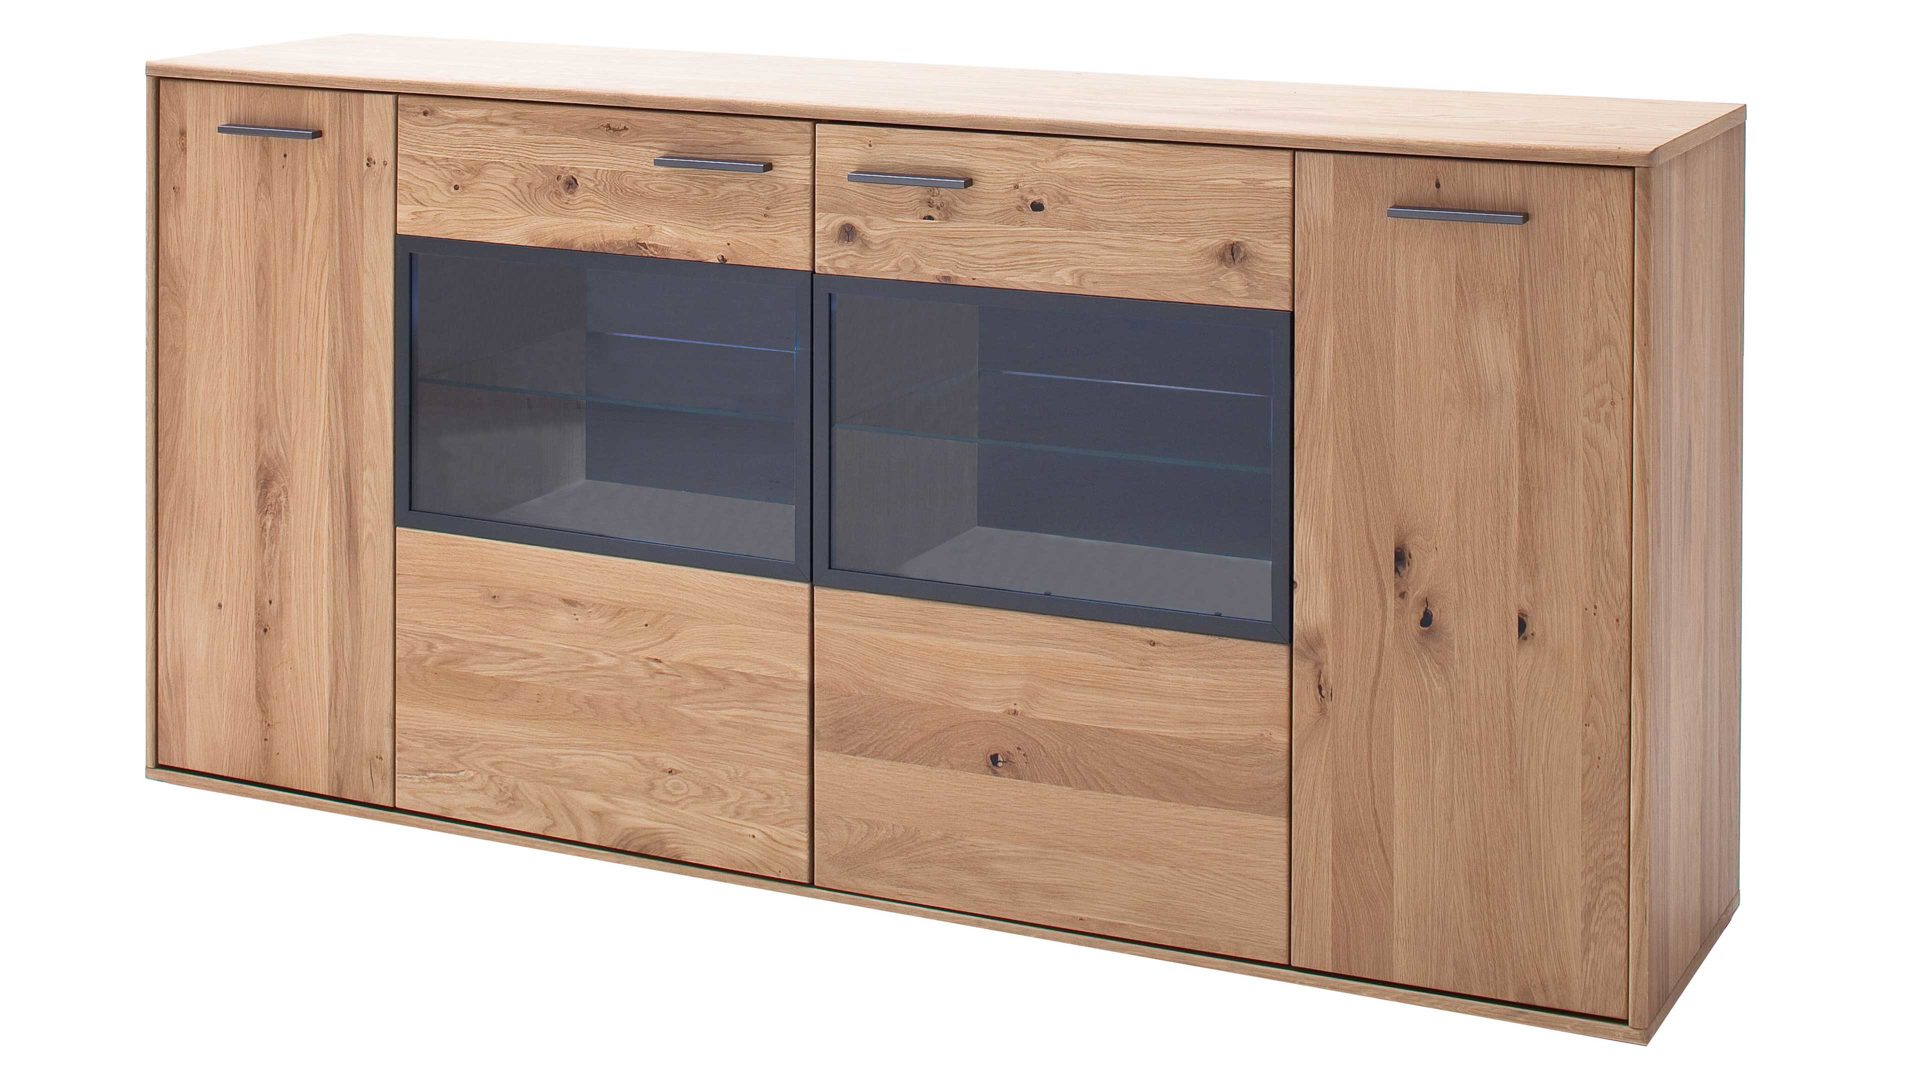 Sideboard Mca furniture aus Holz in Holzfarben Wohnprogramm Portland - Sideboard Asteiche bianco & Anthrazit – vier Türen, Breite ca. 184 cm